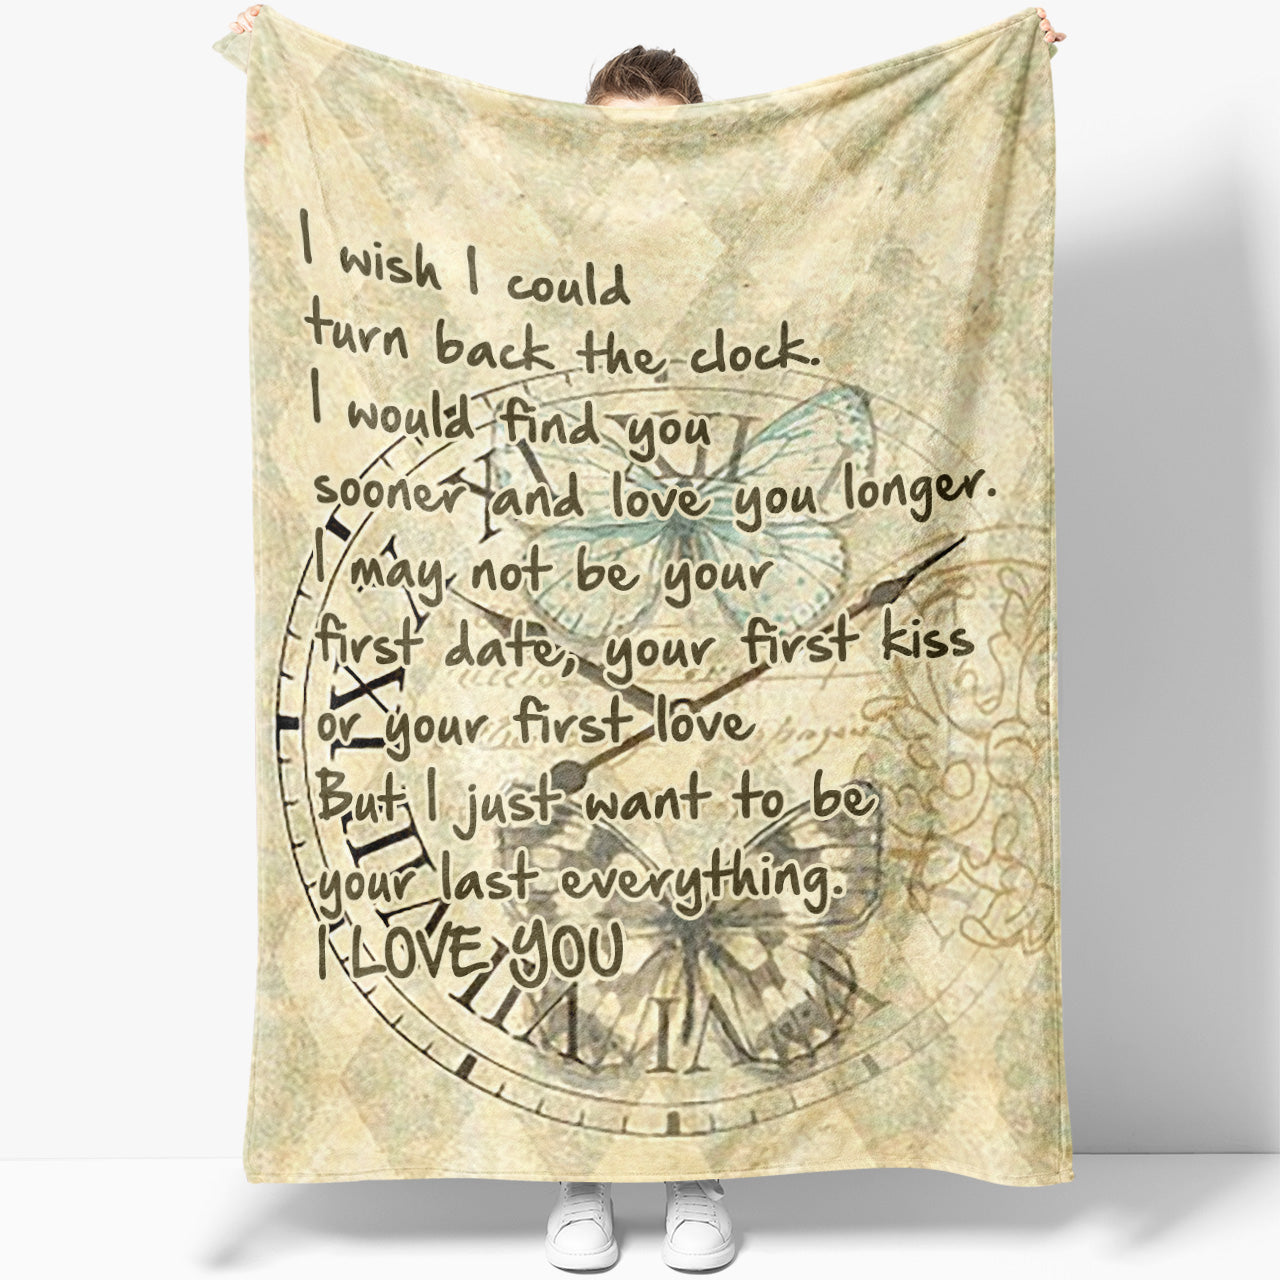 Blanket Gift For Her, Gift Ideas For Women, Romantic Gift For Wife, Turn Back The Clock, Fleece 2012034